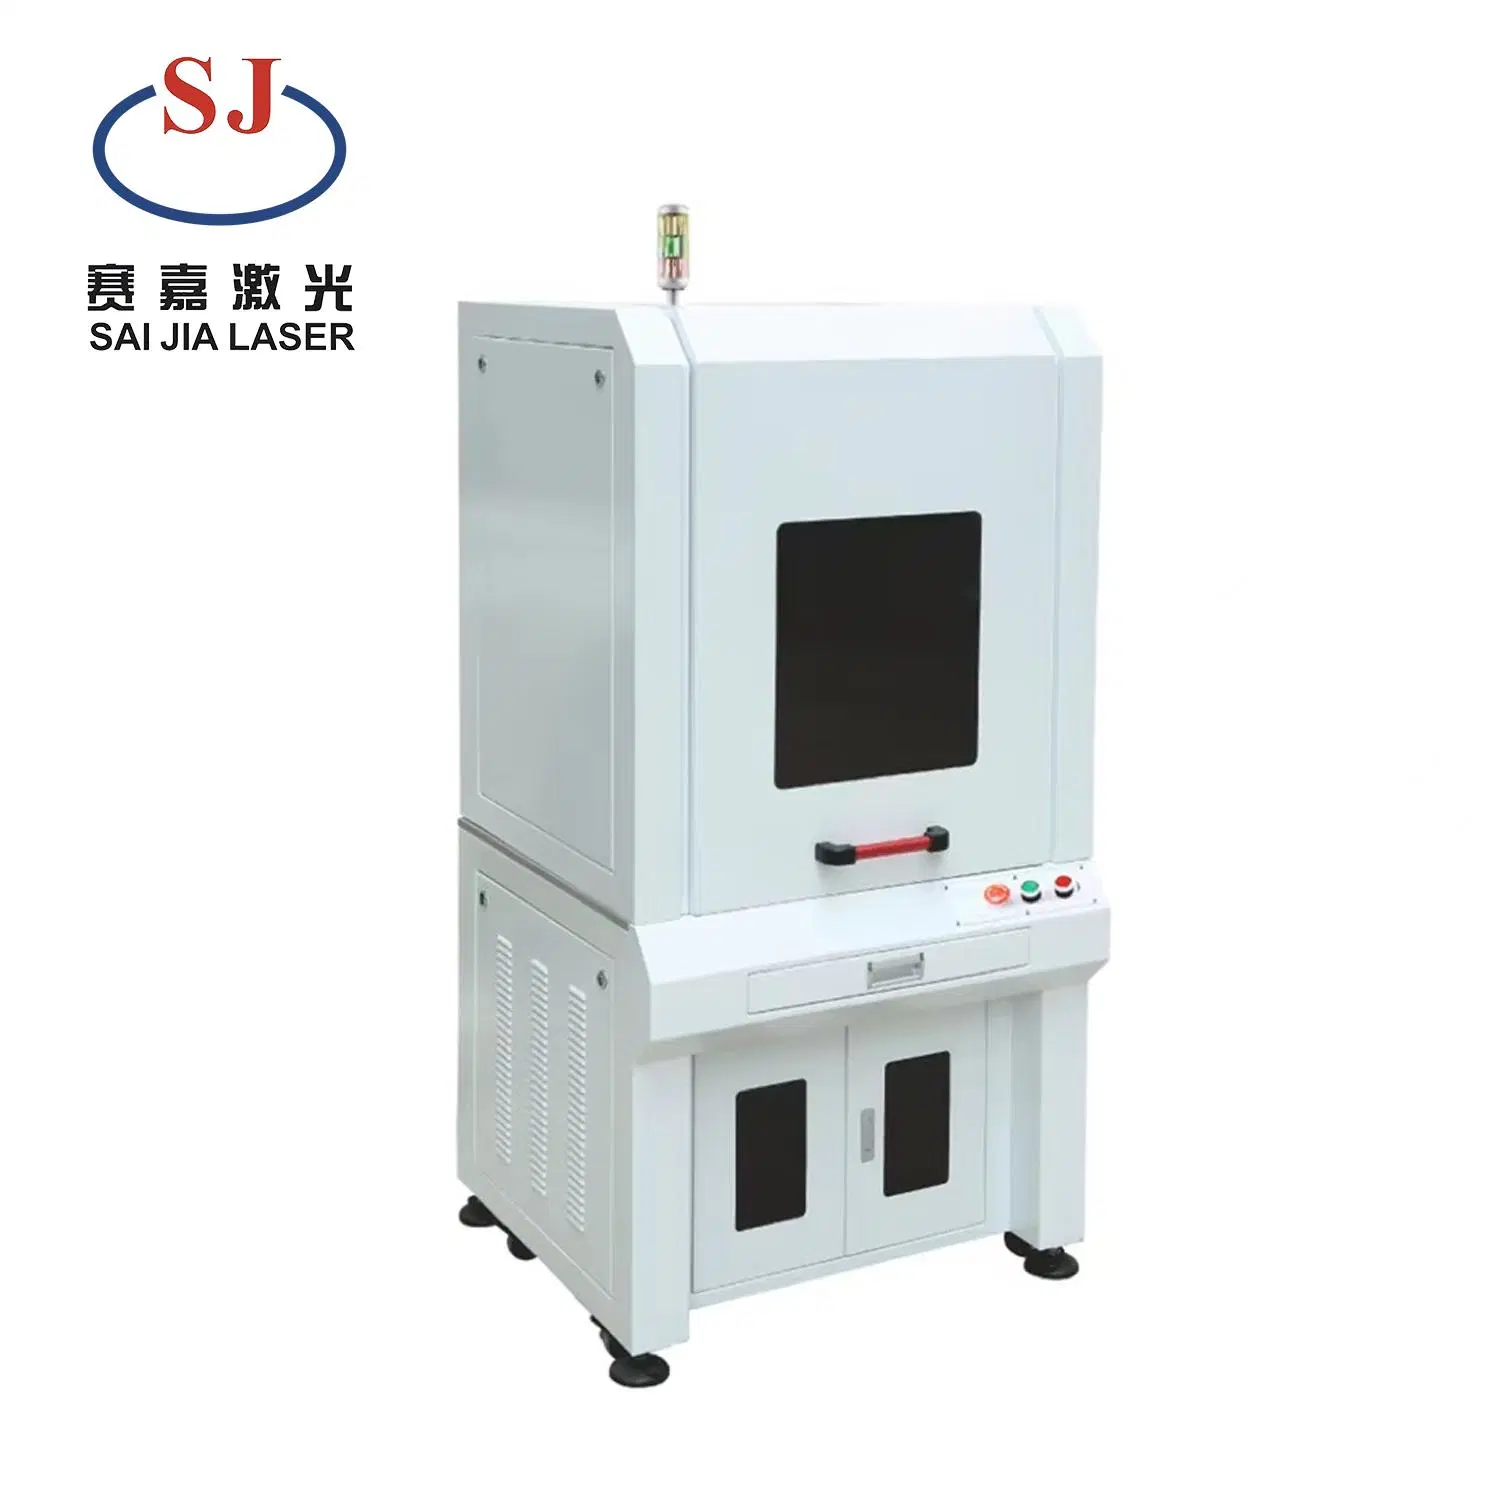 Personalización de la muestra máquina de marcado láser de fibra para grabado de metal de la hometal